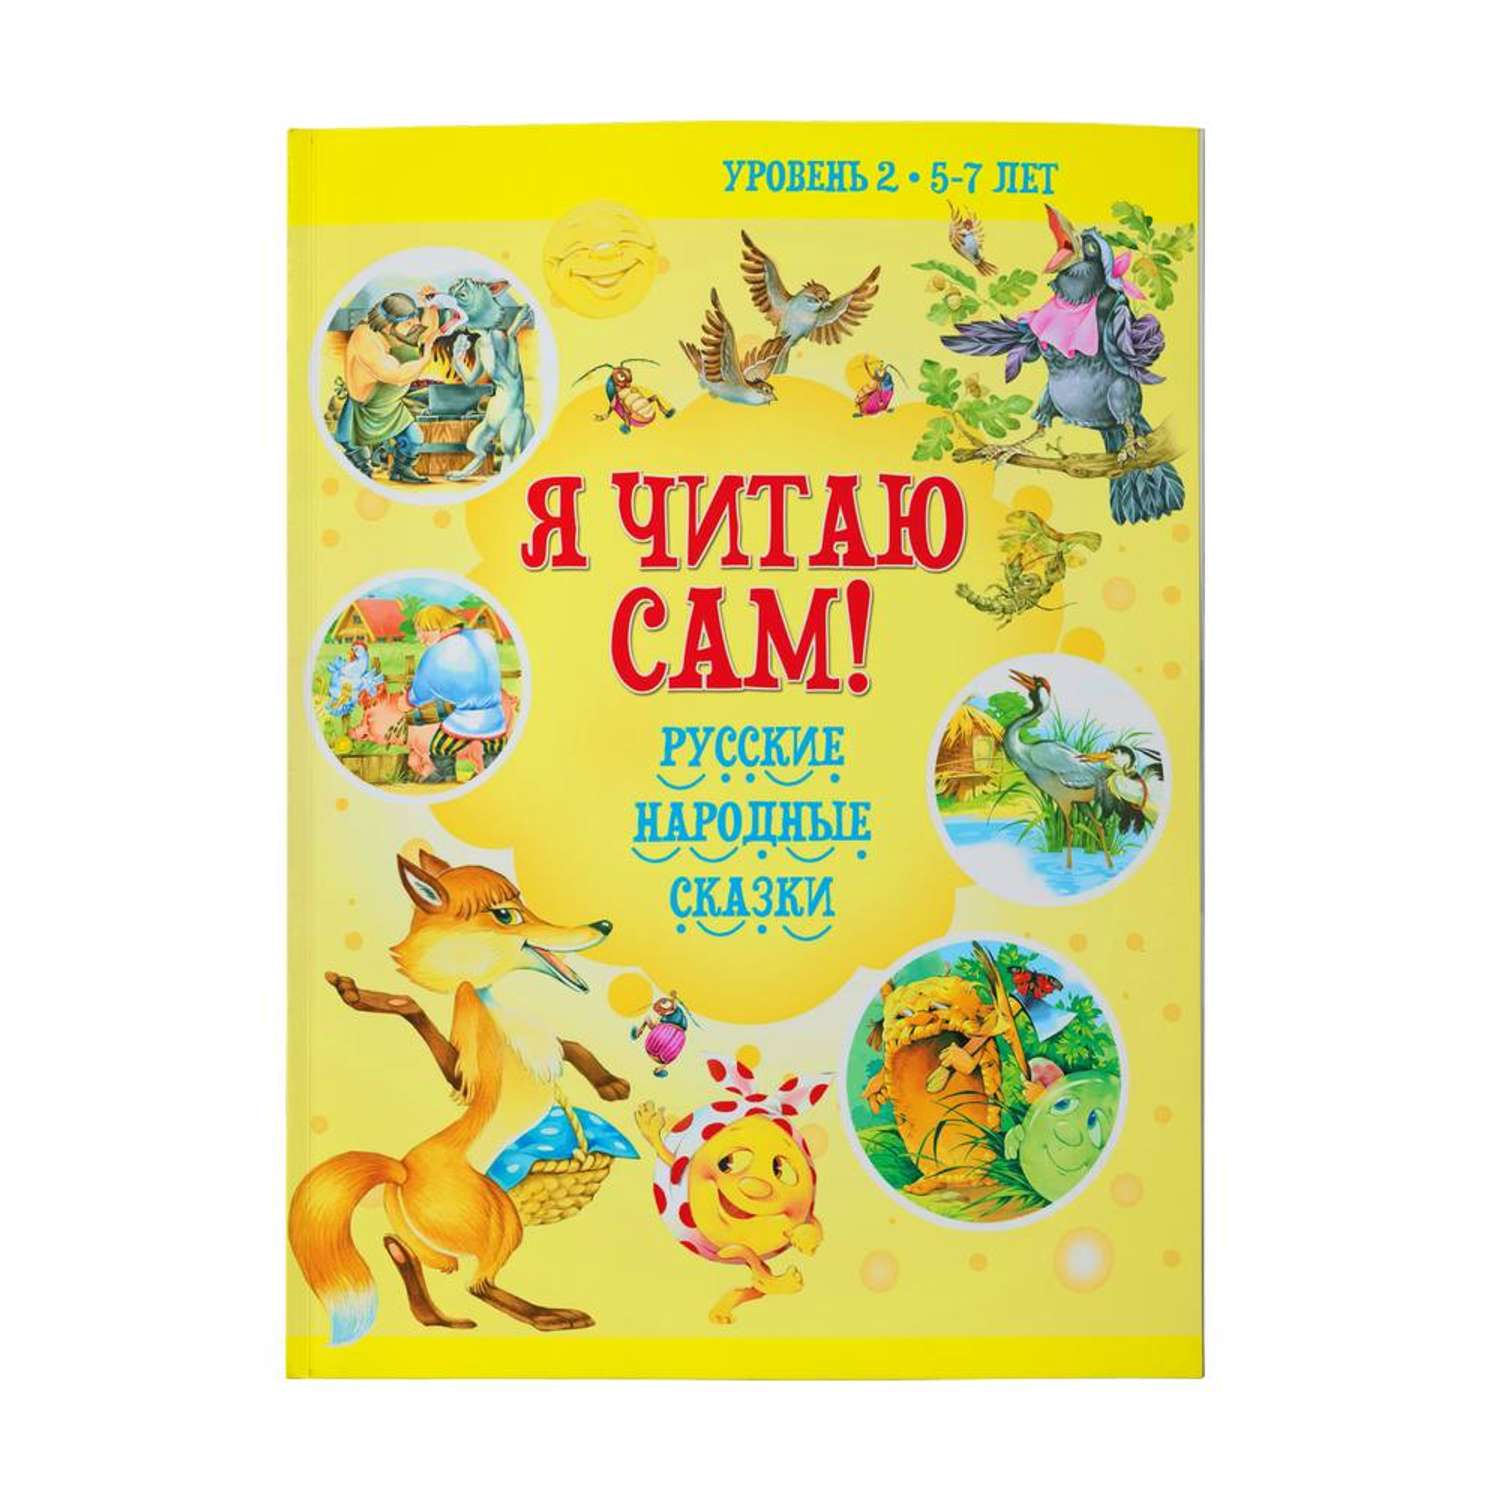 Детские сказки — купить книгу сказок для детей в азинский.рф